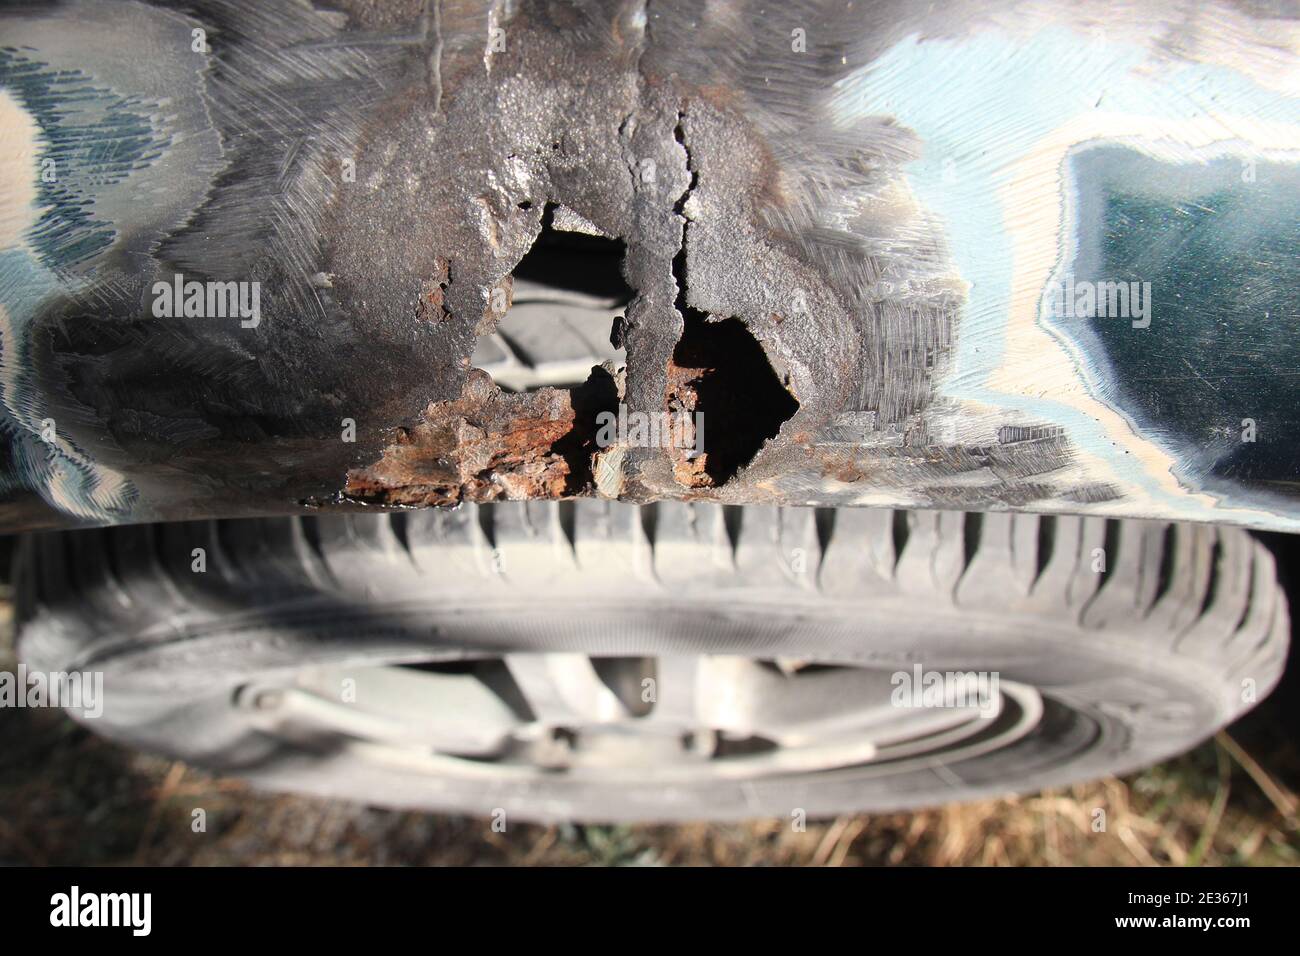 Metallkorrosion auf einem Autokotflügel, Rostloch. Karosserie Reparatur.  Draufsicht Stockfotografie - Alamy